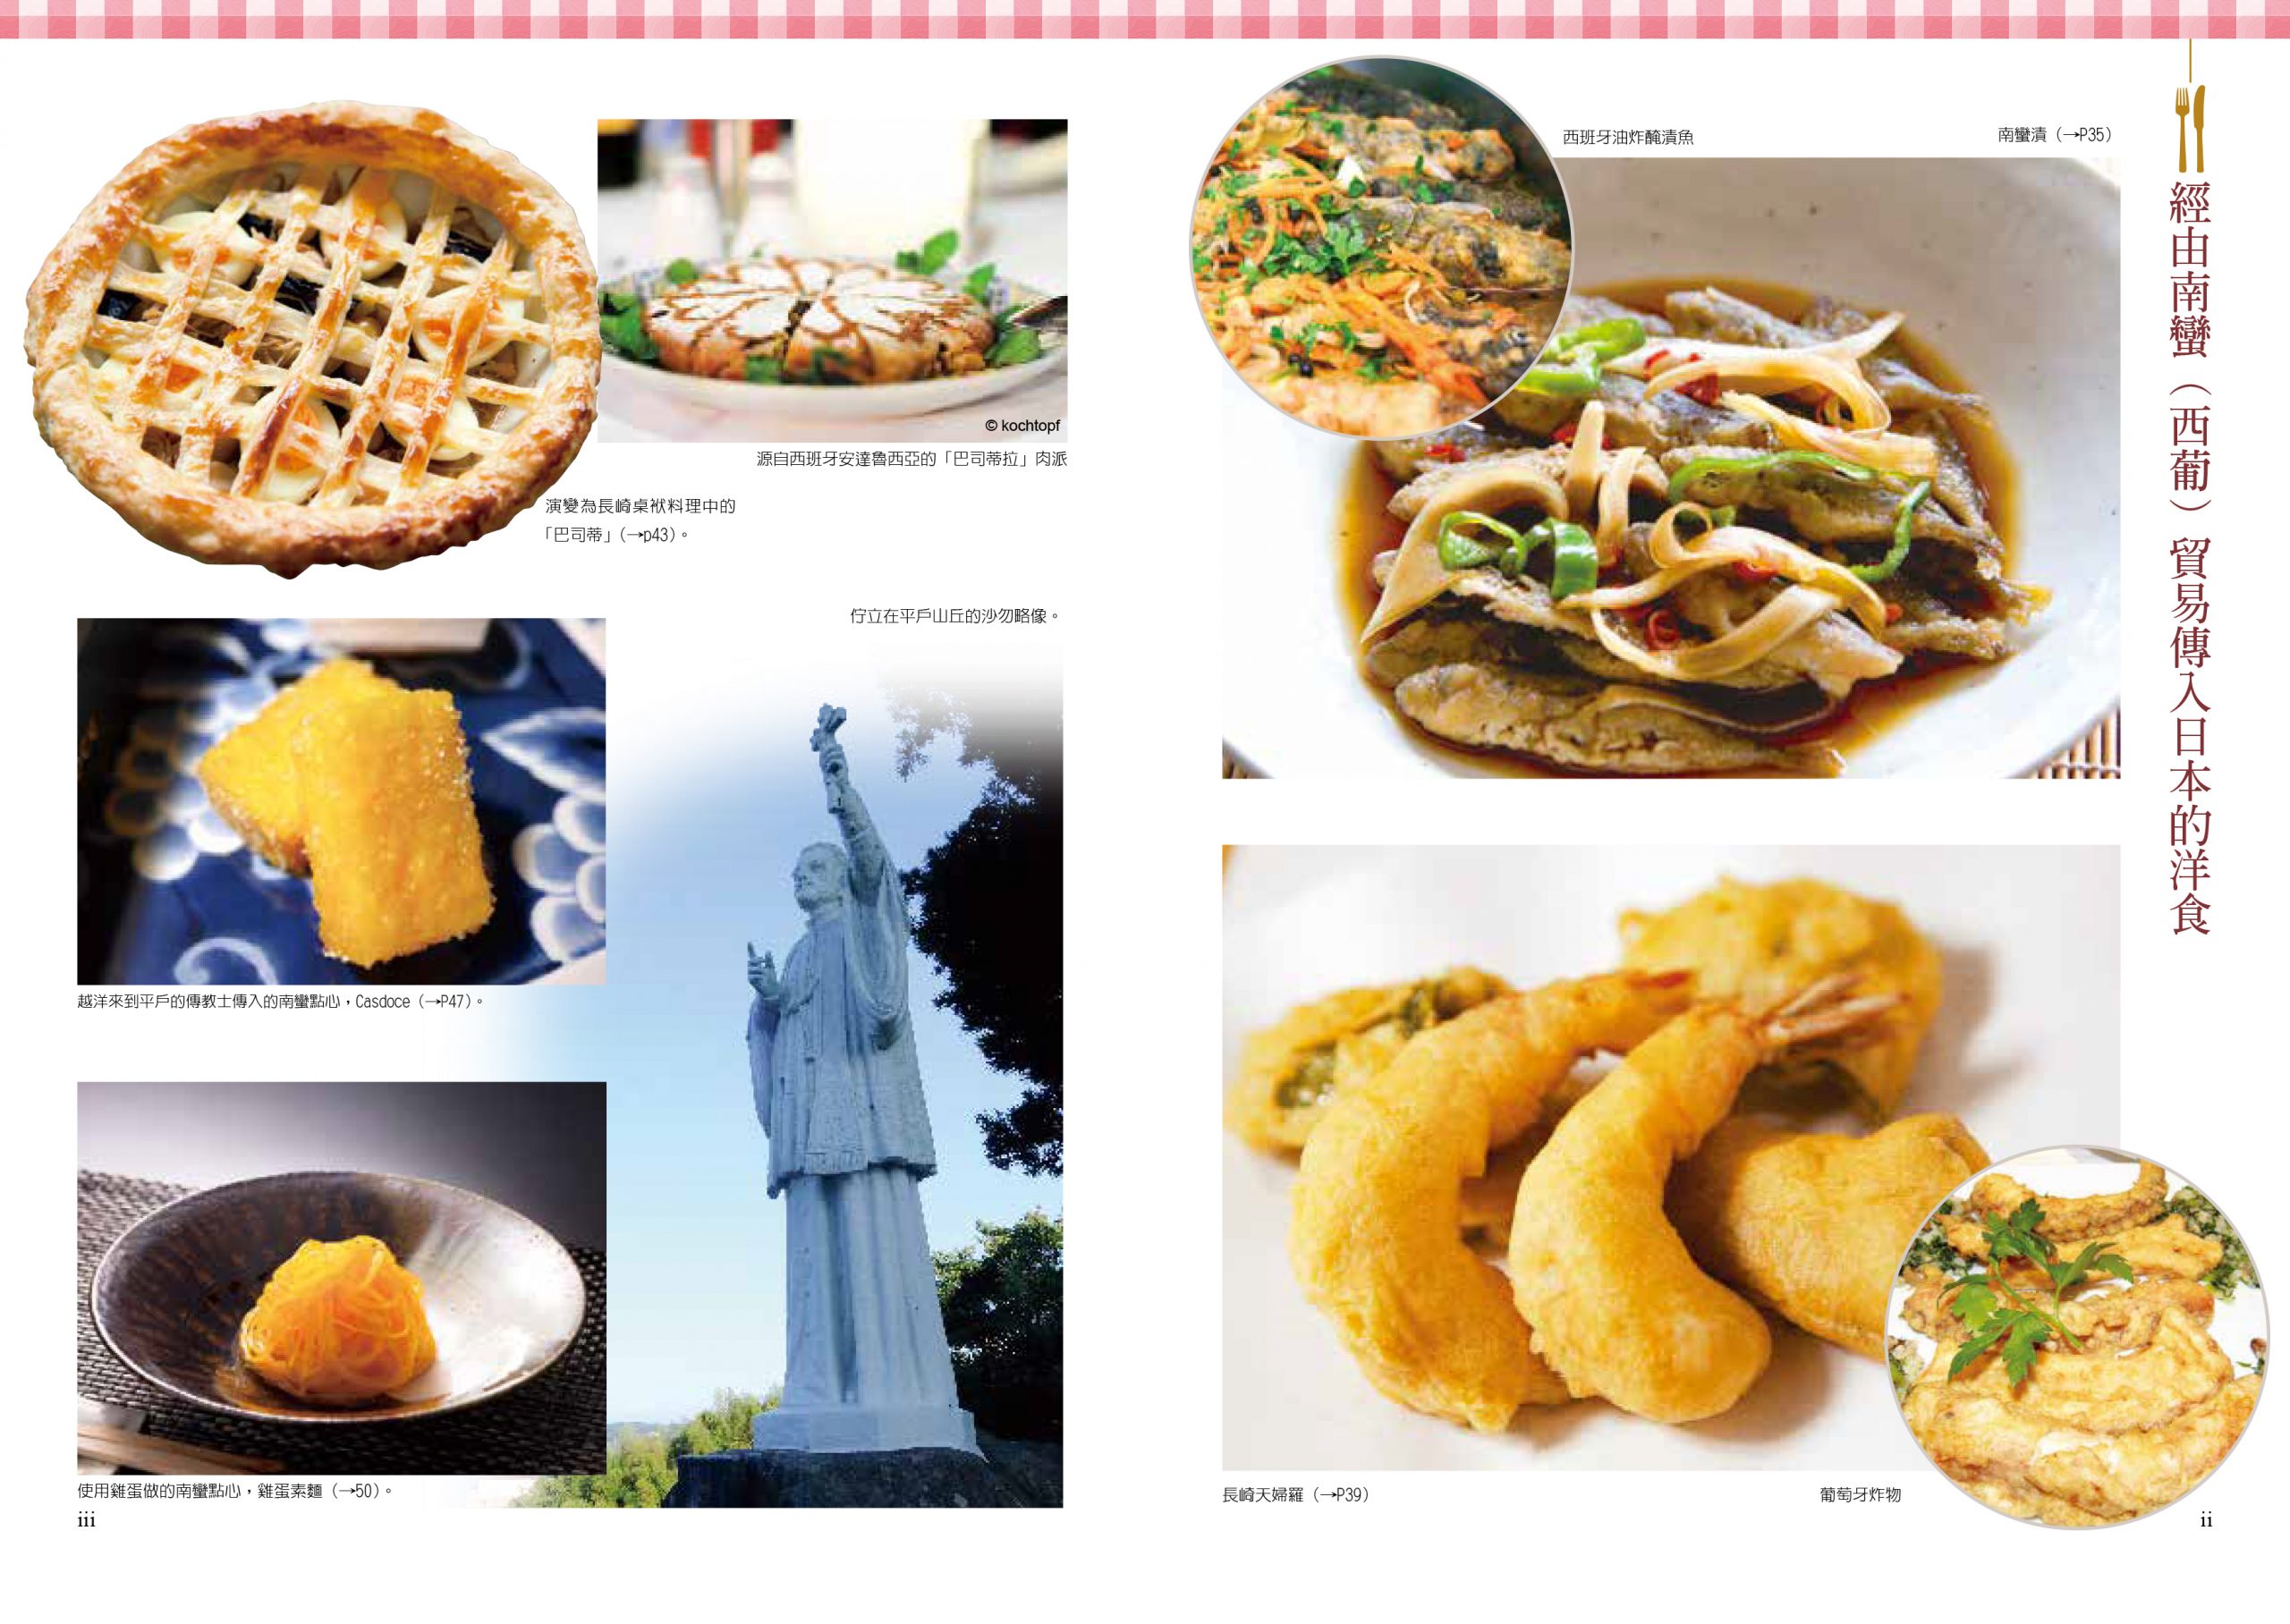 日本的洋食 從洋食解開日本飲食文化之謎 九歌文學誌